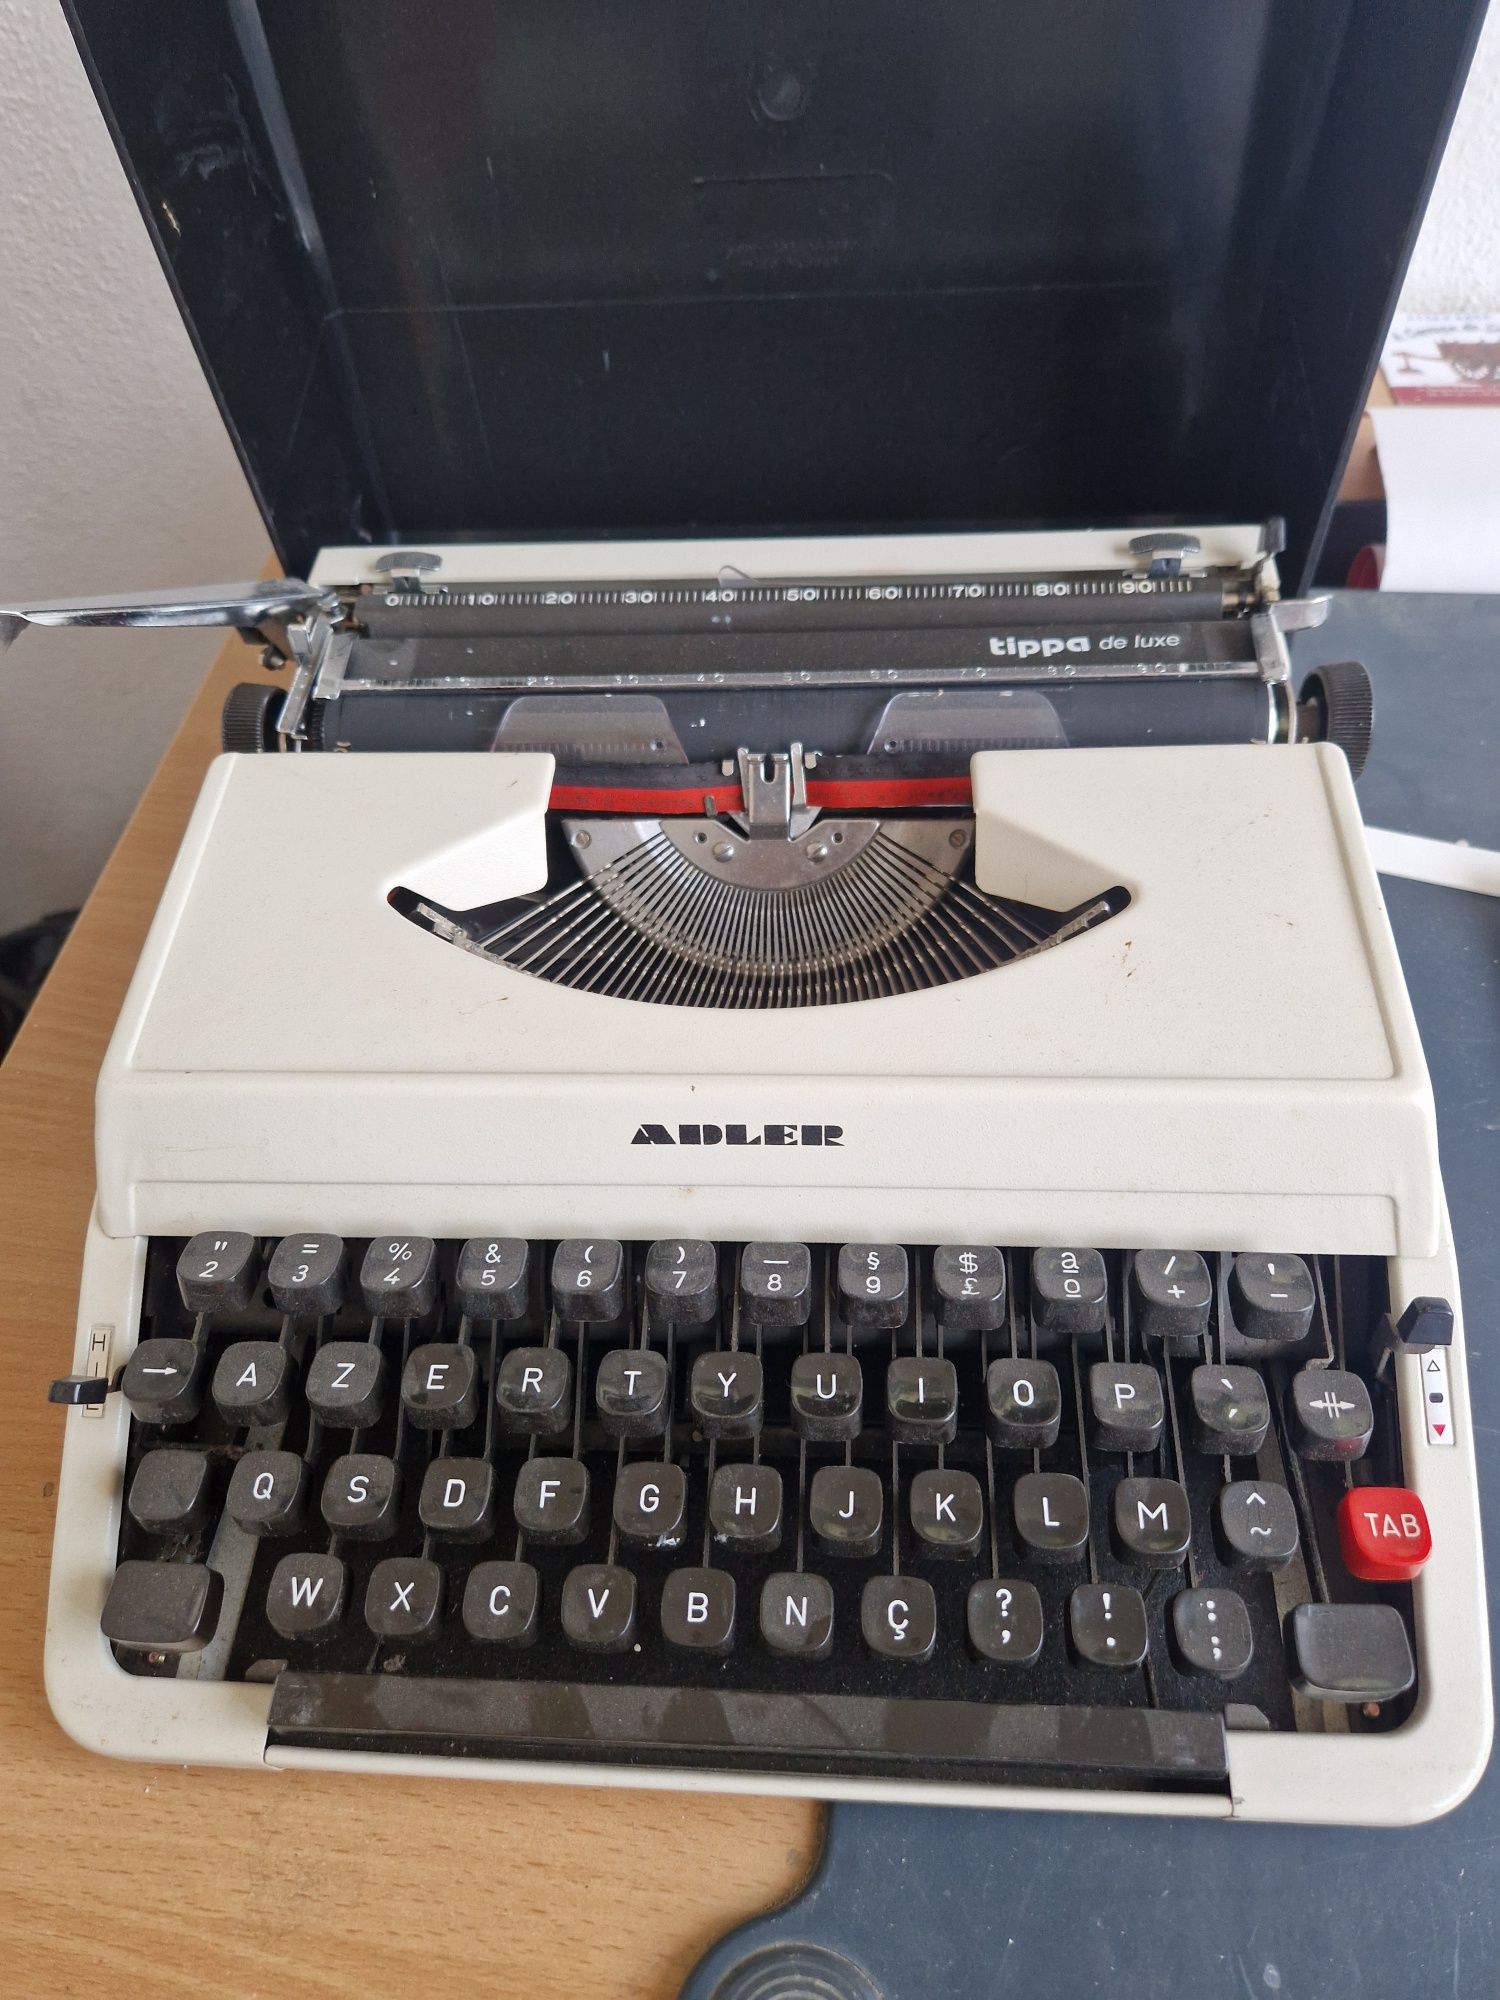 Maquina escrever Adler tippa